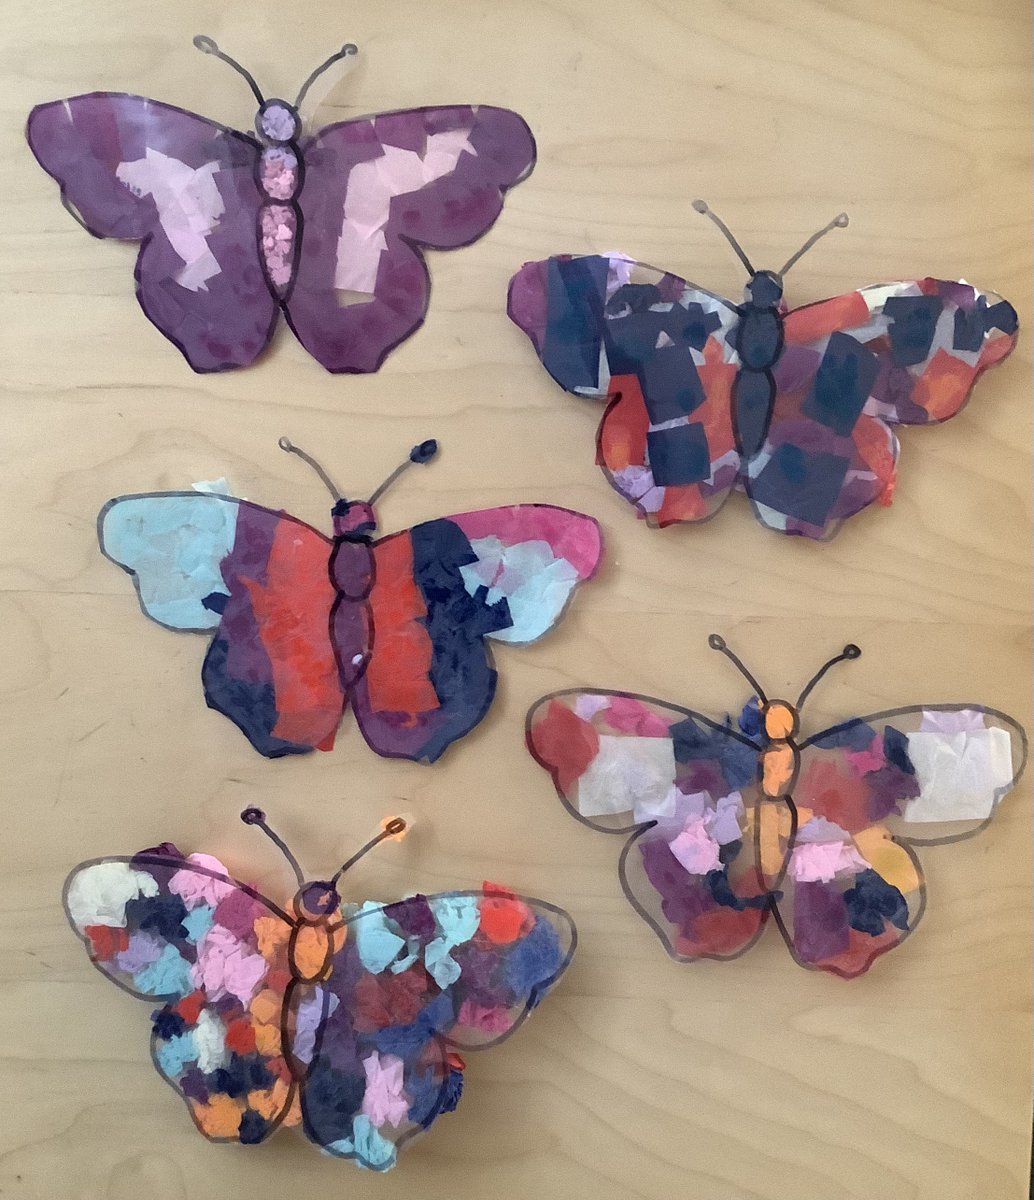 #ReceptionClass created beautiful butterfly sun catchers. #EYFS